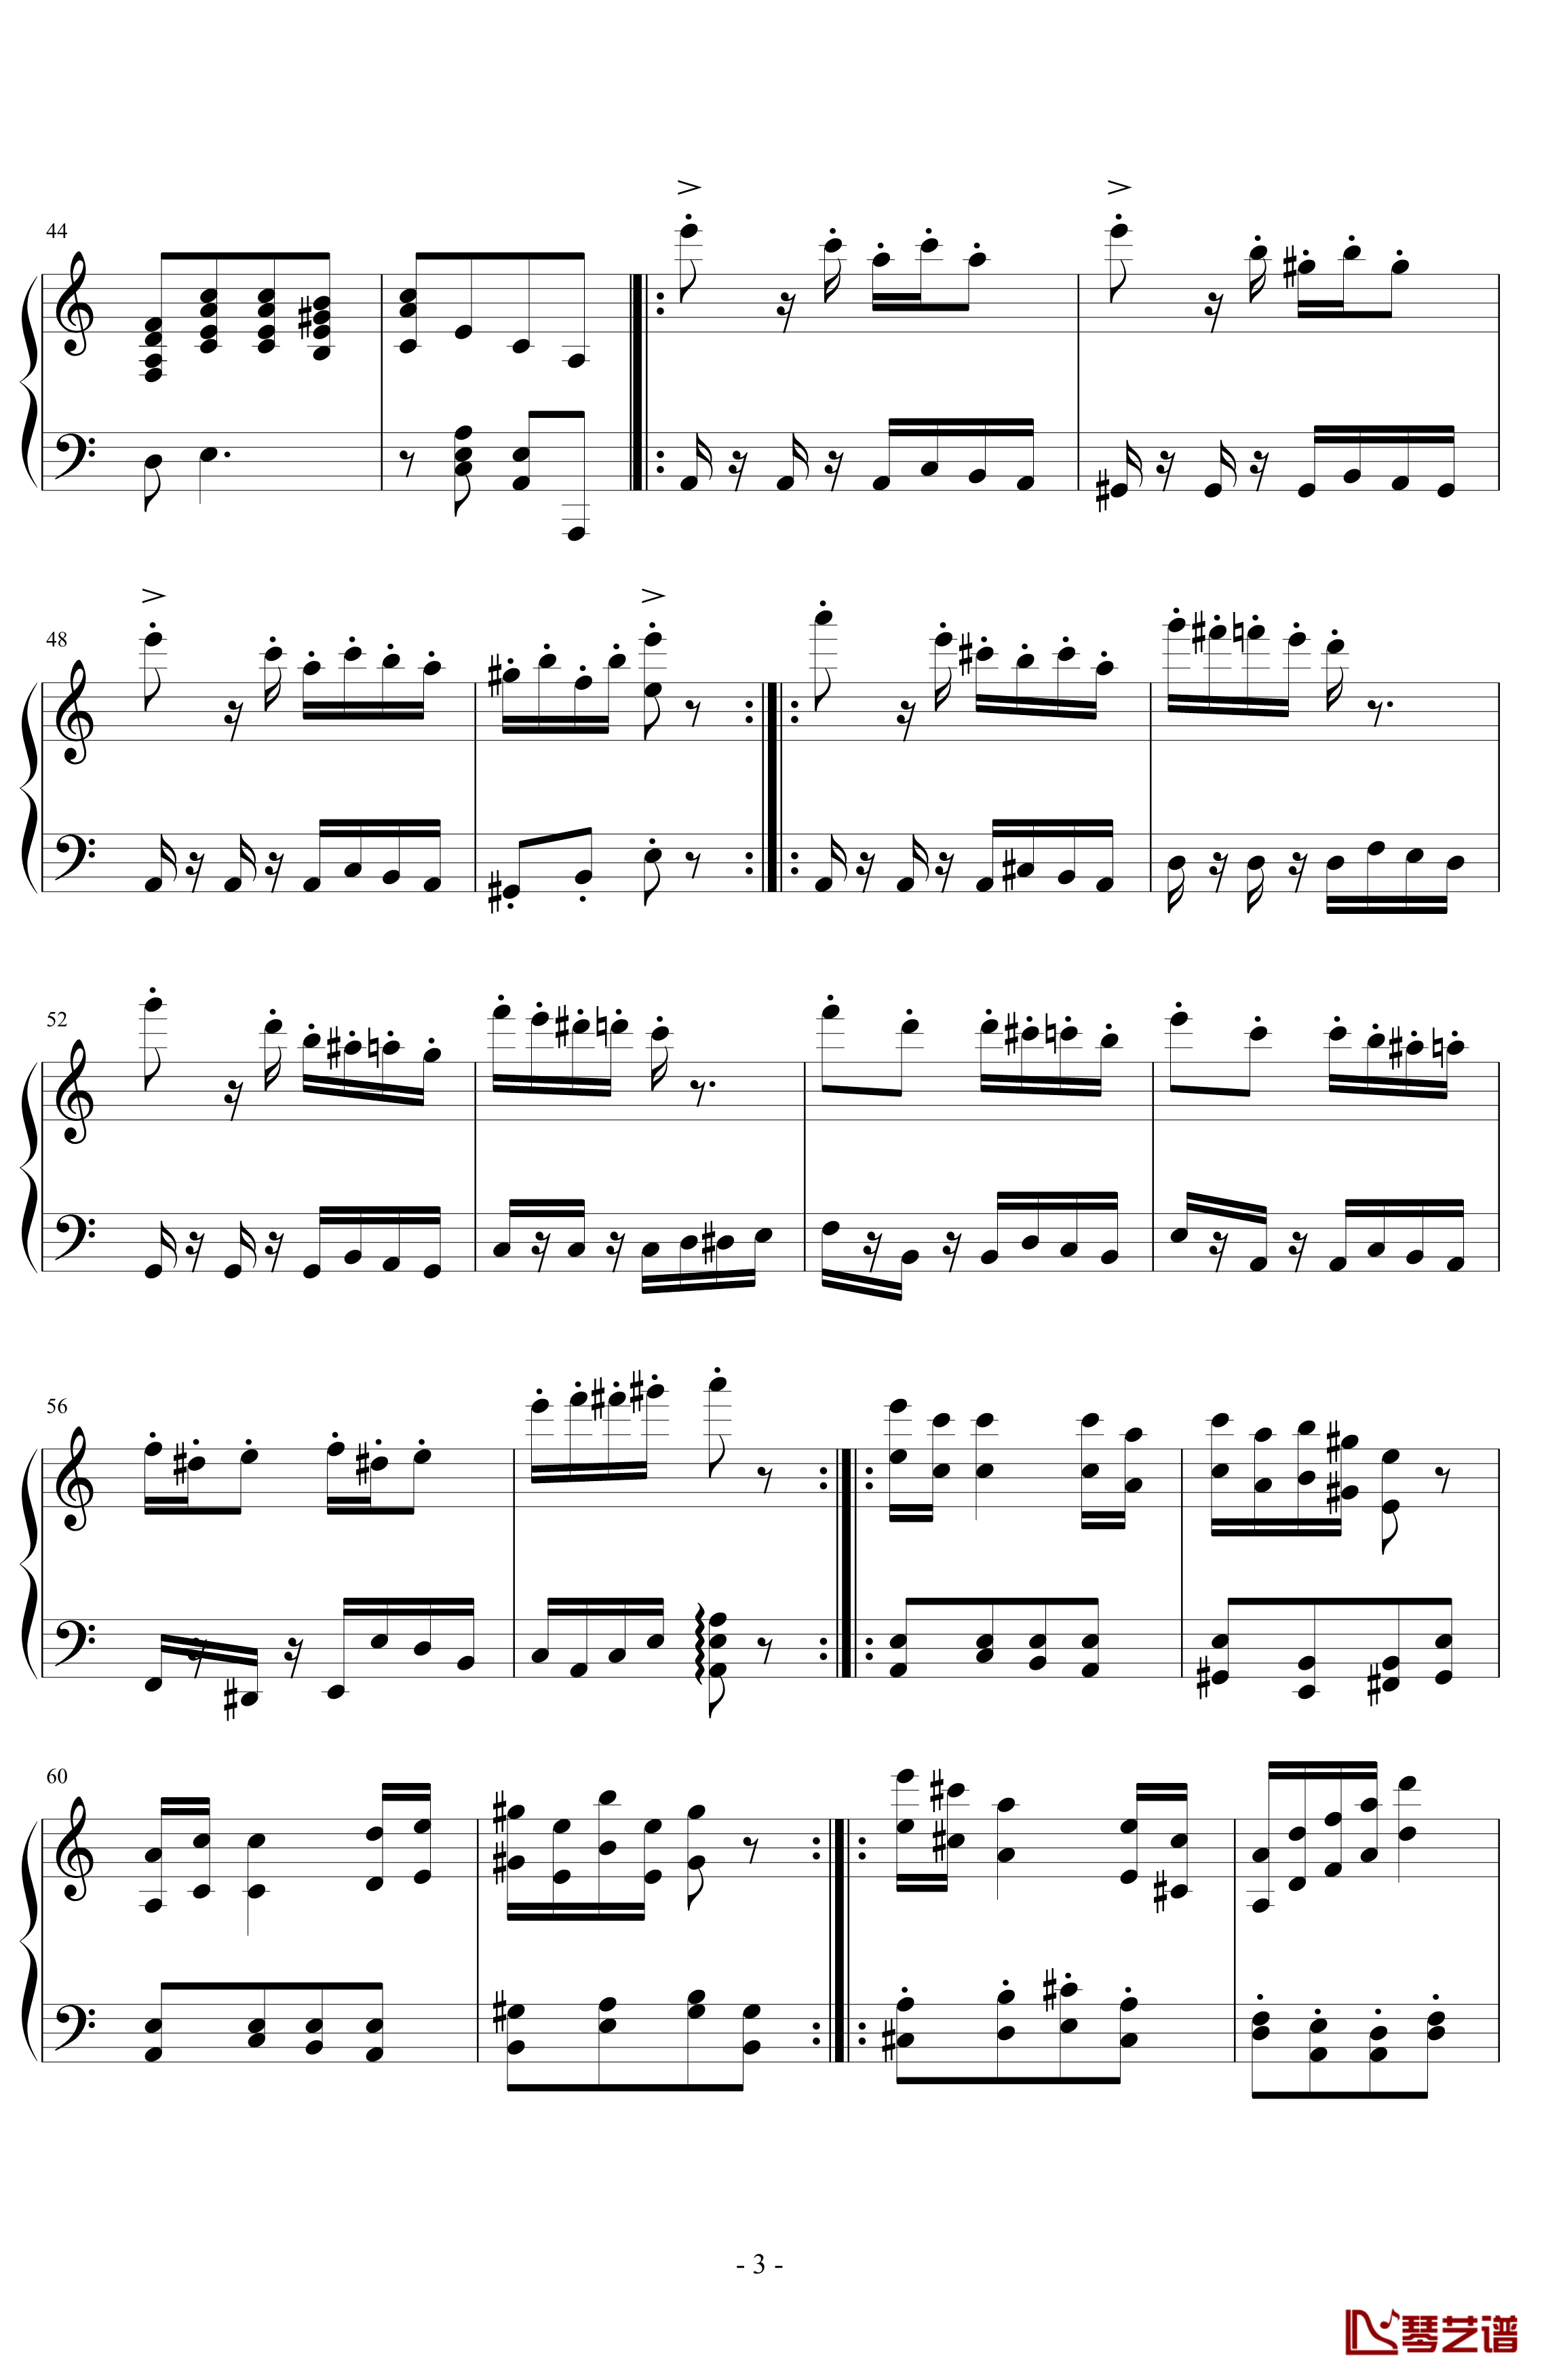 经典主题变奏曲钢琴谱-丁晓峰3